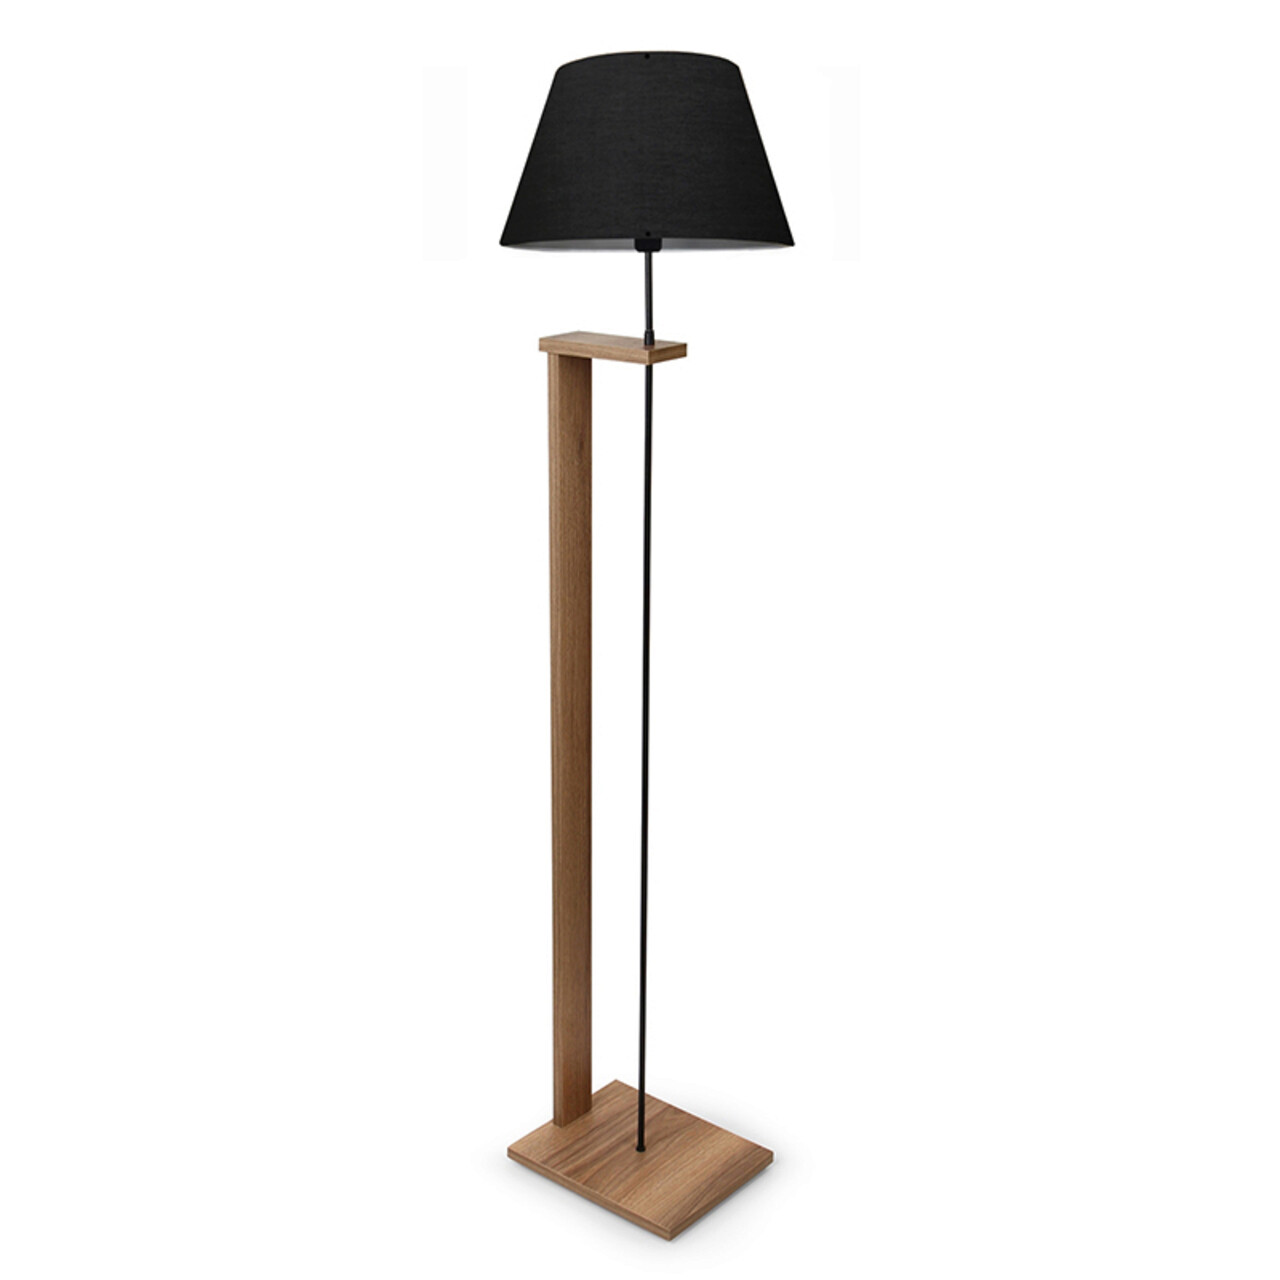 Lampadar Lumino, Pakoworld, 38x38x150 cm, 1 x E27, textil/MDF, negru/maro